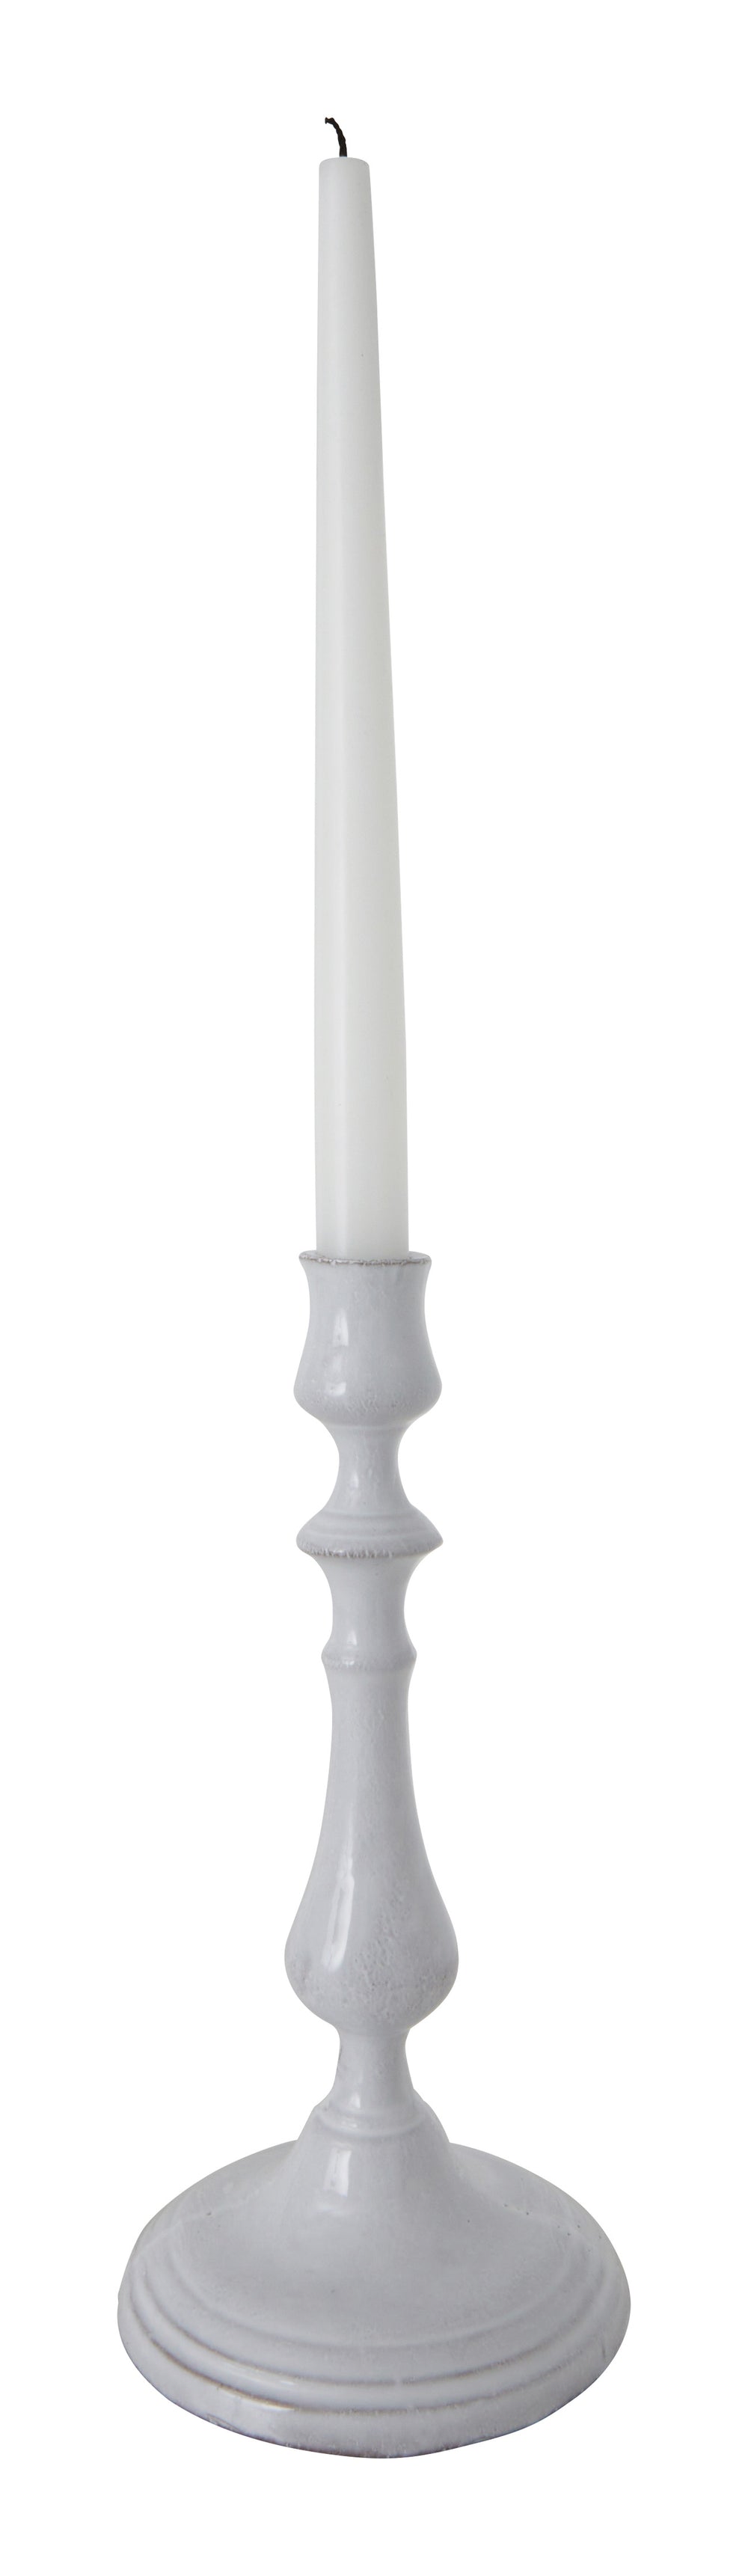 Astier de Villatte Istanbul Candleholder